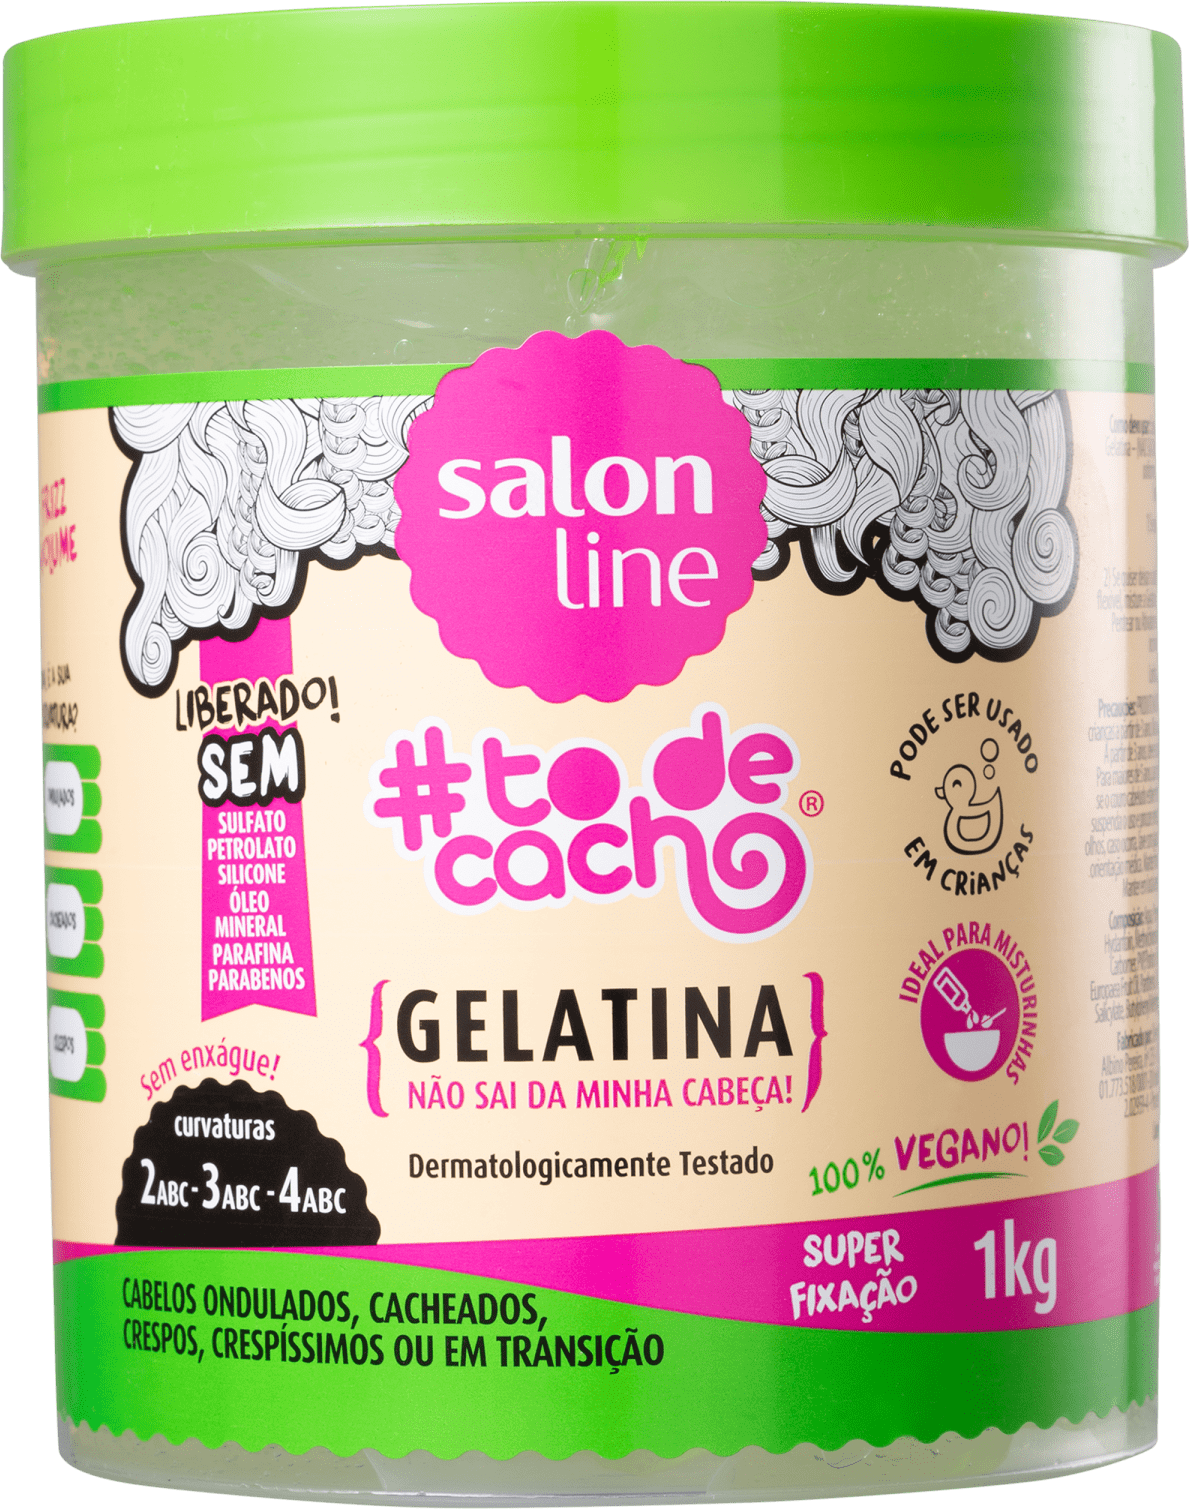 Salon Line - Você já conhece os segredos da Gelatina {Não